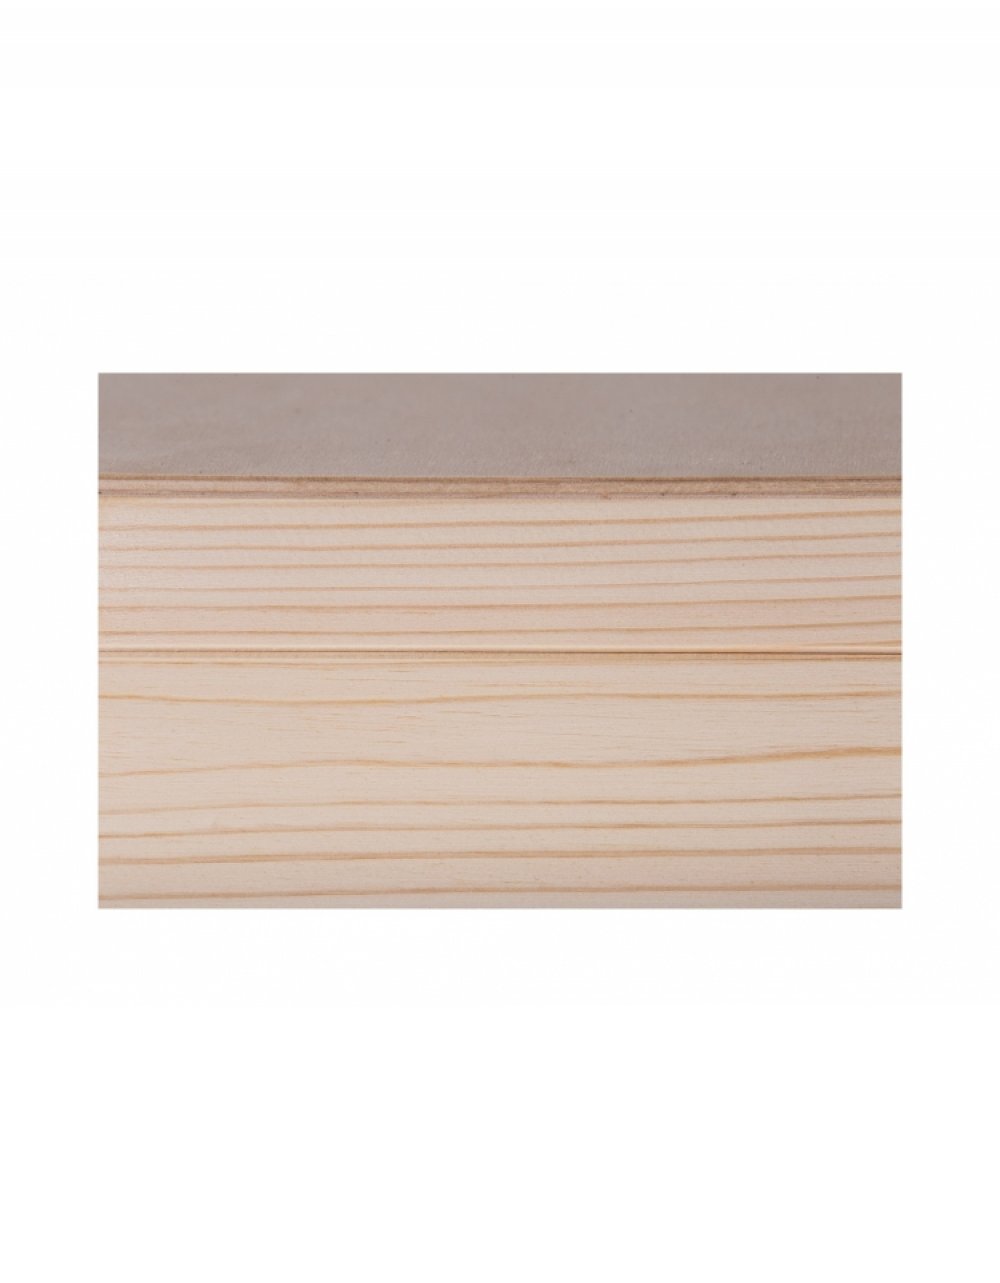 Přírodní dřevěná krabička 17x13x5 cm